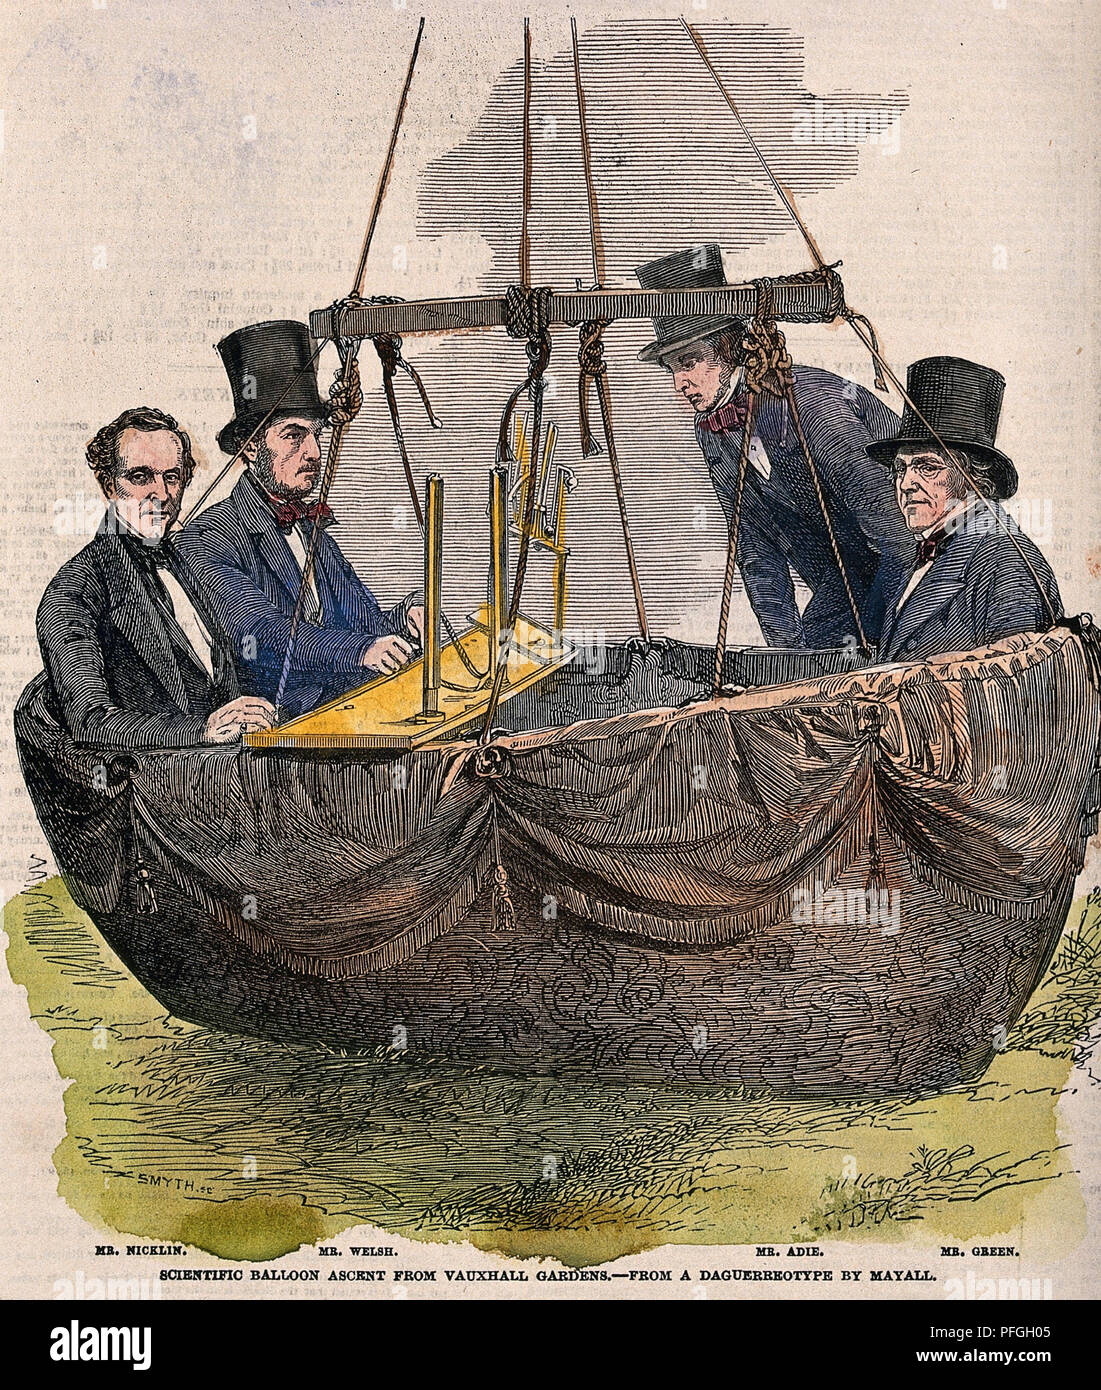 CHARLES GREEN (1785-1870) English balloonist (à droite) avec des compagnons sur un vol en ballon de Vauxhall Gardens en 1852. Leurs instruments mesurent la température de l'air et de la pression. Gravure sur bois en couleur à partir d'un livre de 1853. Banque D'Images